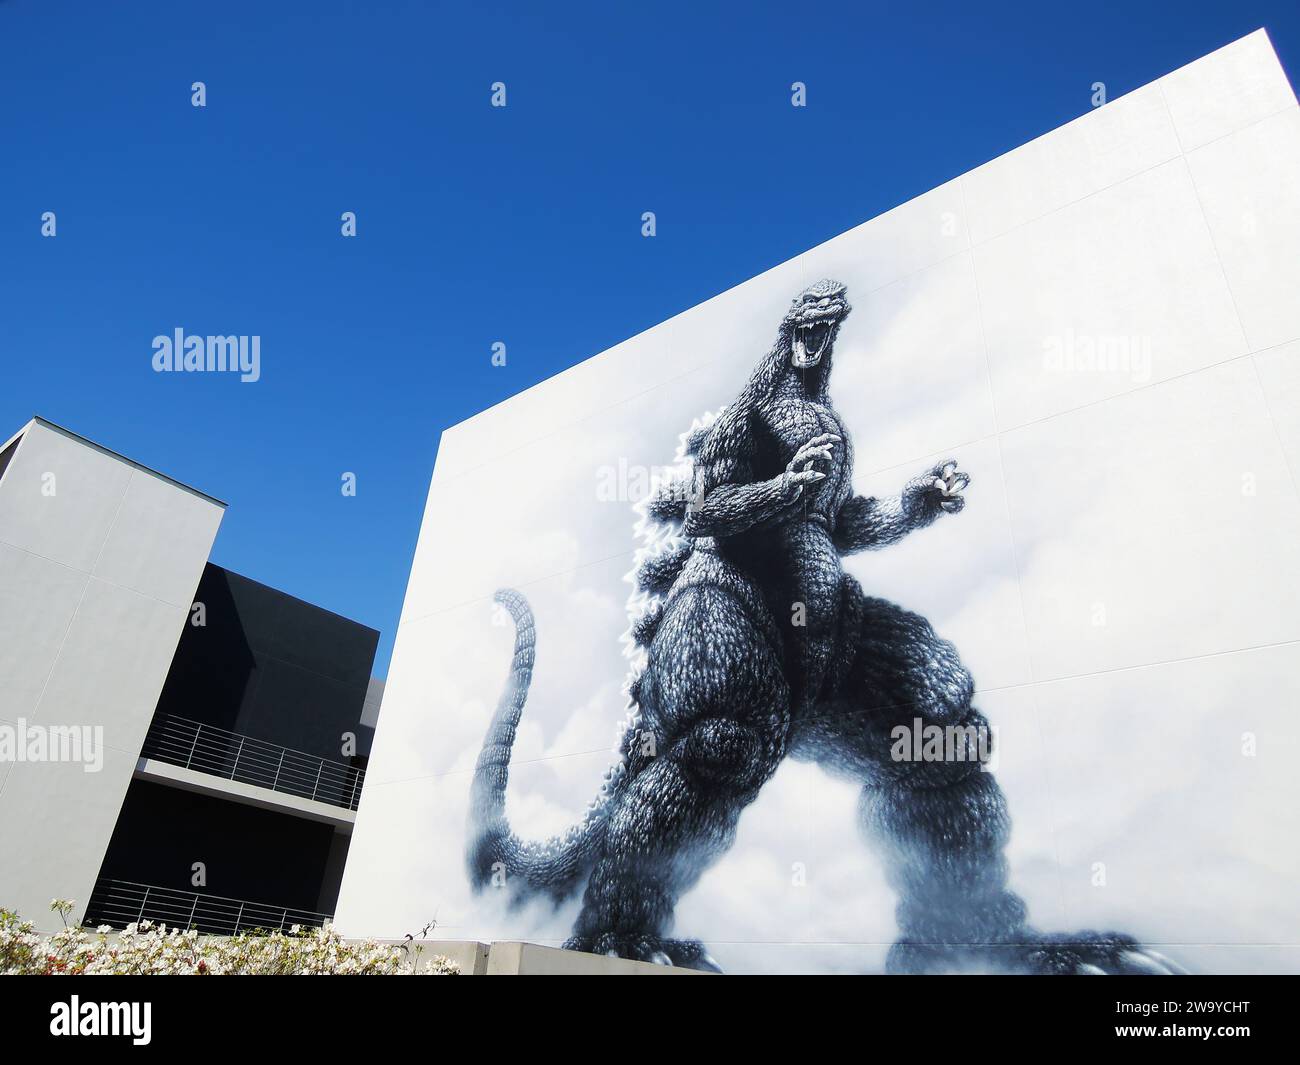 Godzilla at Toho Studios in Tokyo, Japan. Stock Photo